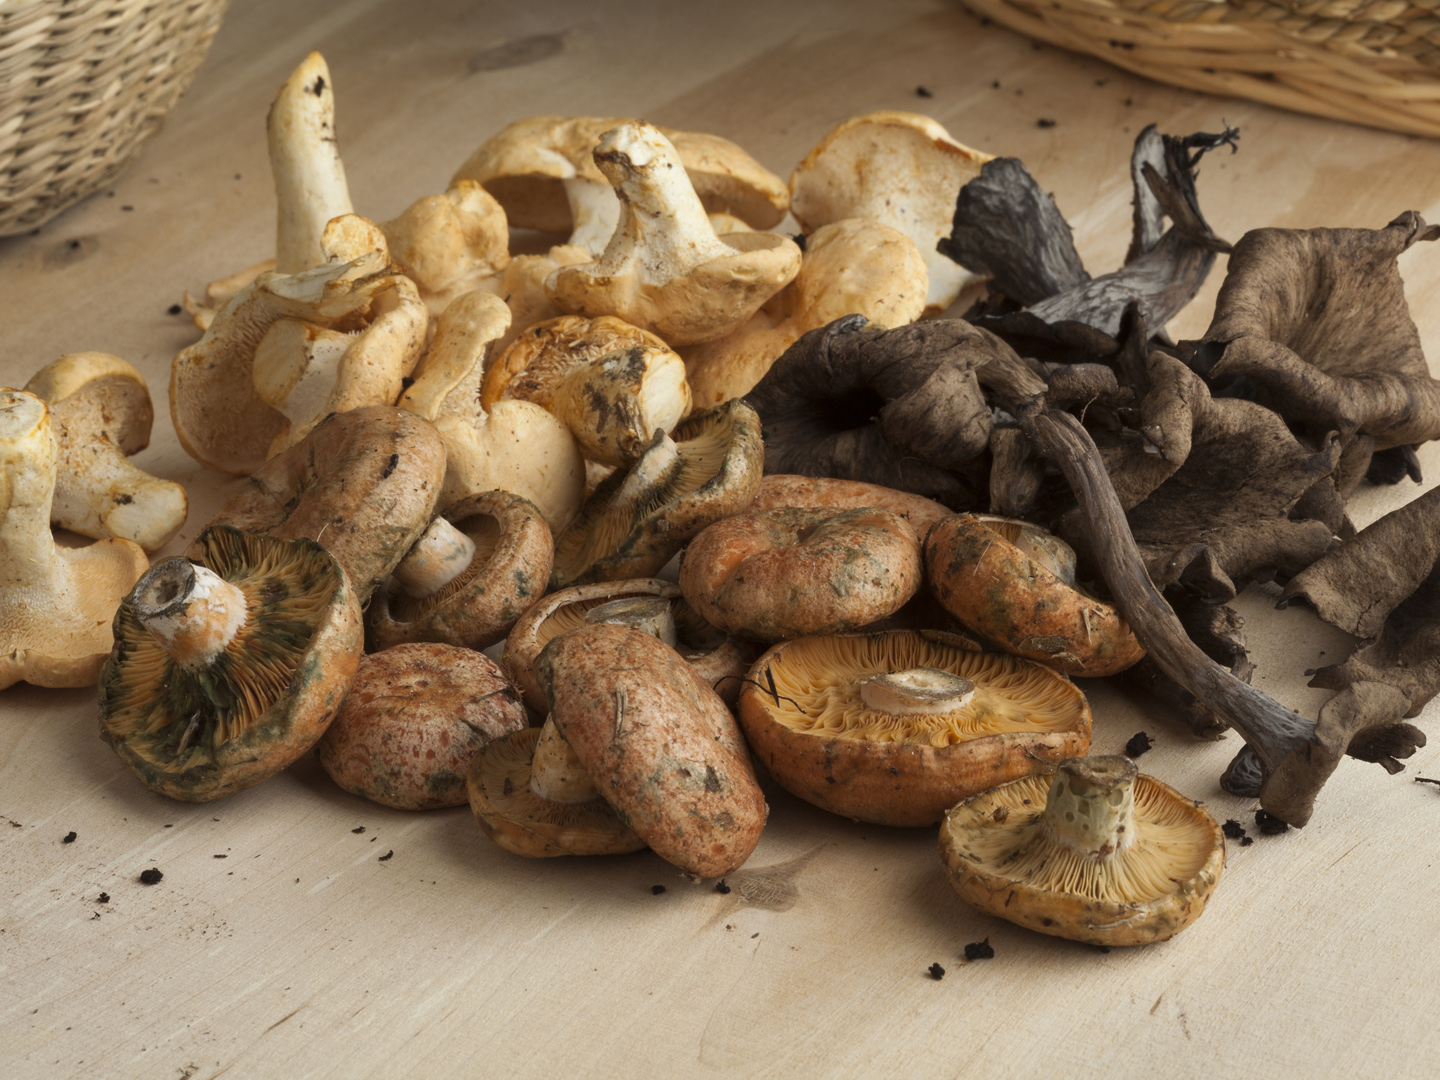 rich in vanadium: Mushrooms